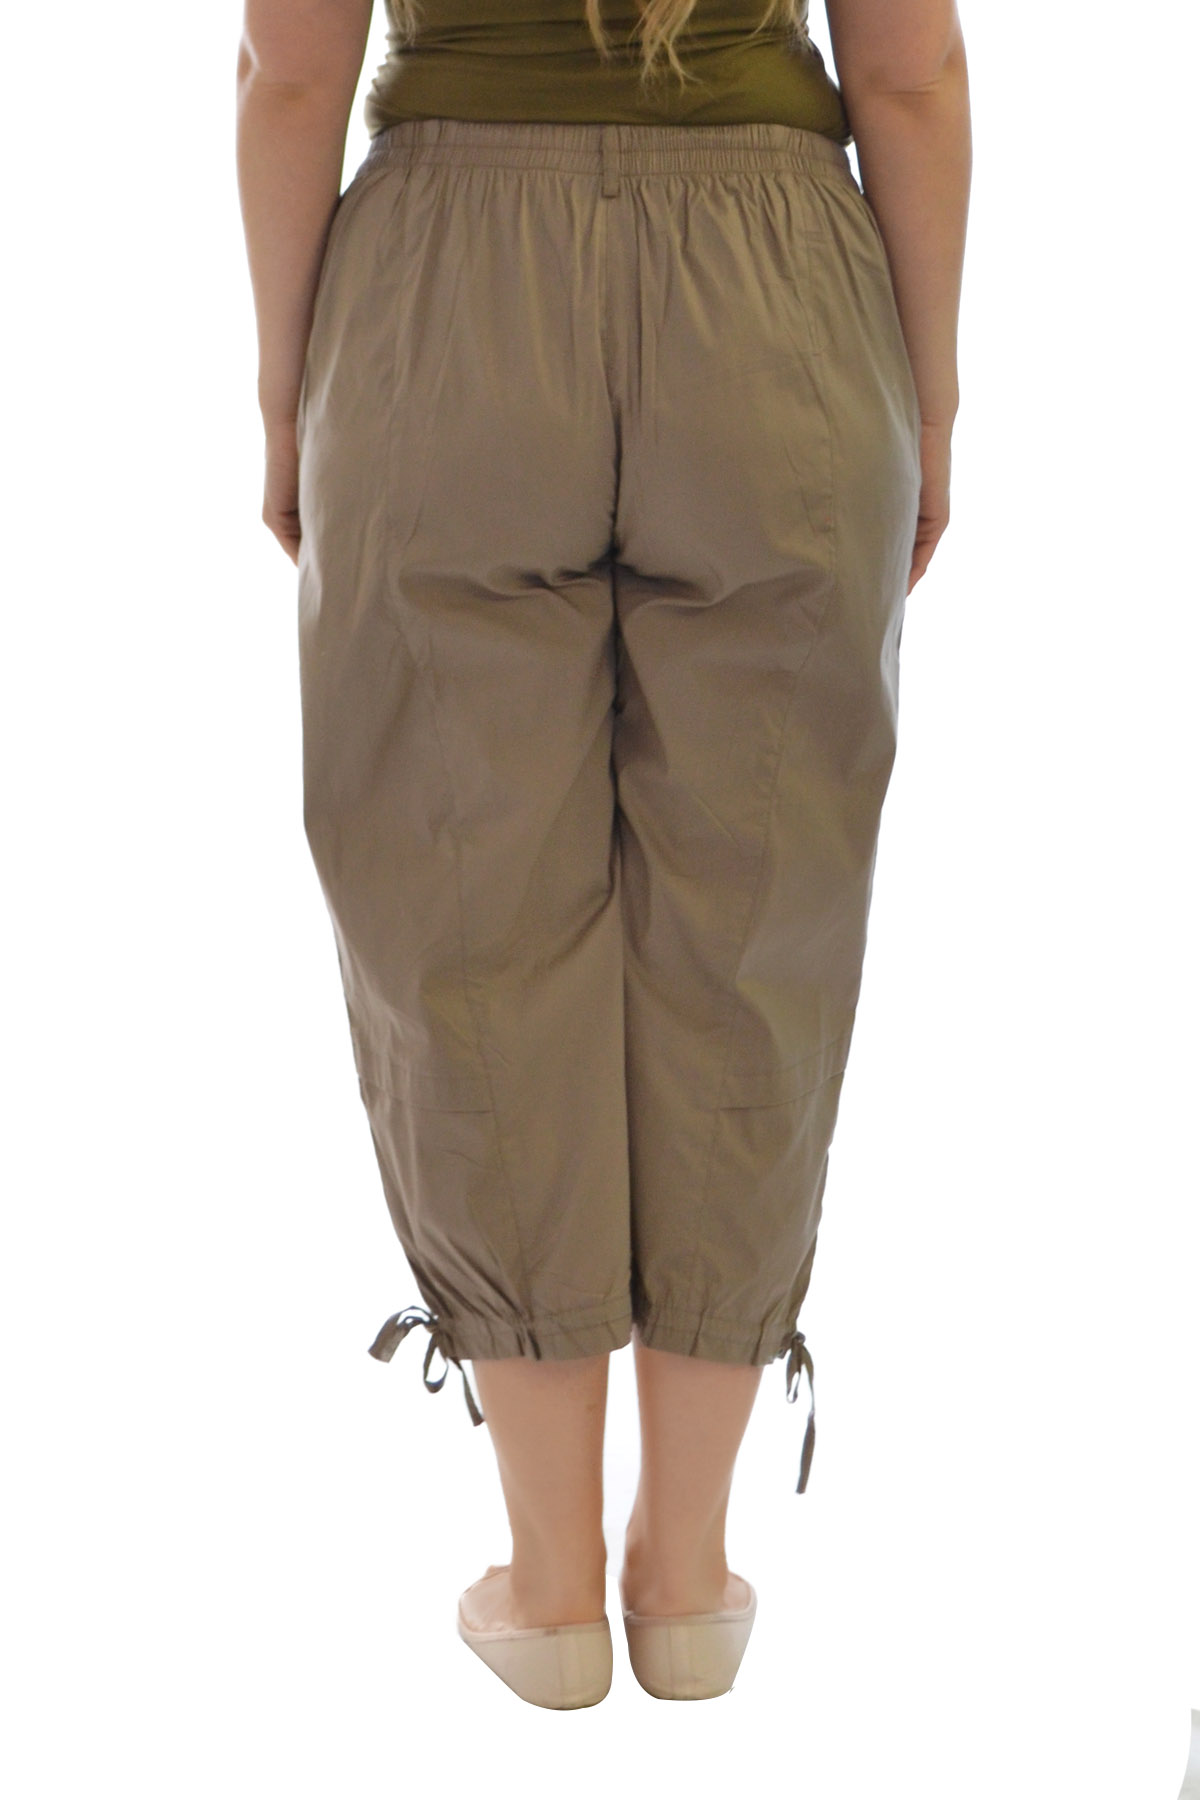 New Womens Plus Size Trouser Ladies Capri Pants Zip Cotton Sale Cropped